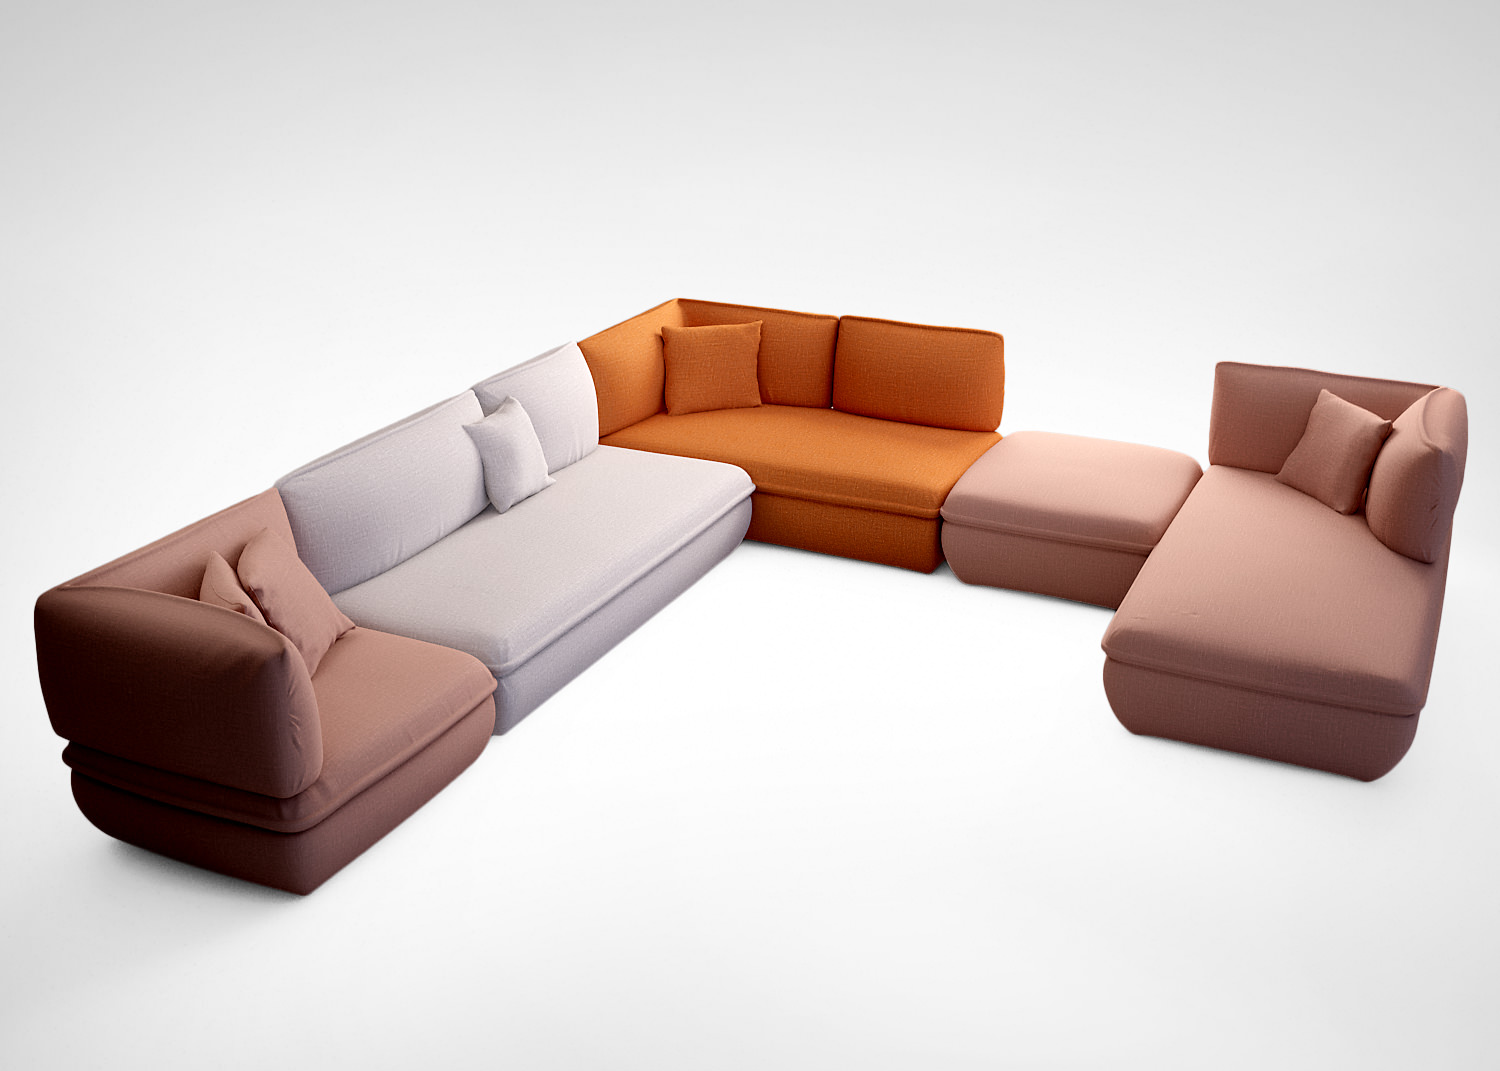 Depadova Mimic modular sofas 3D model